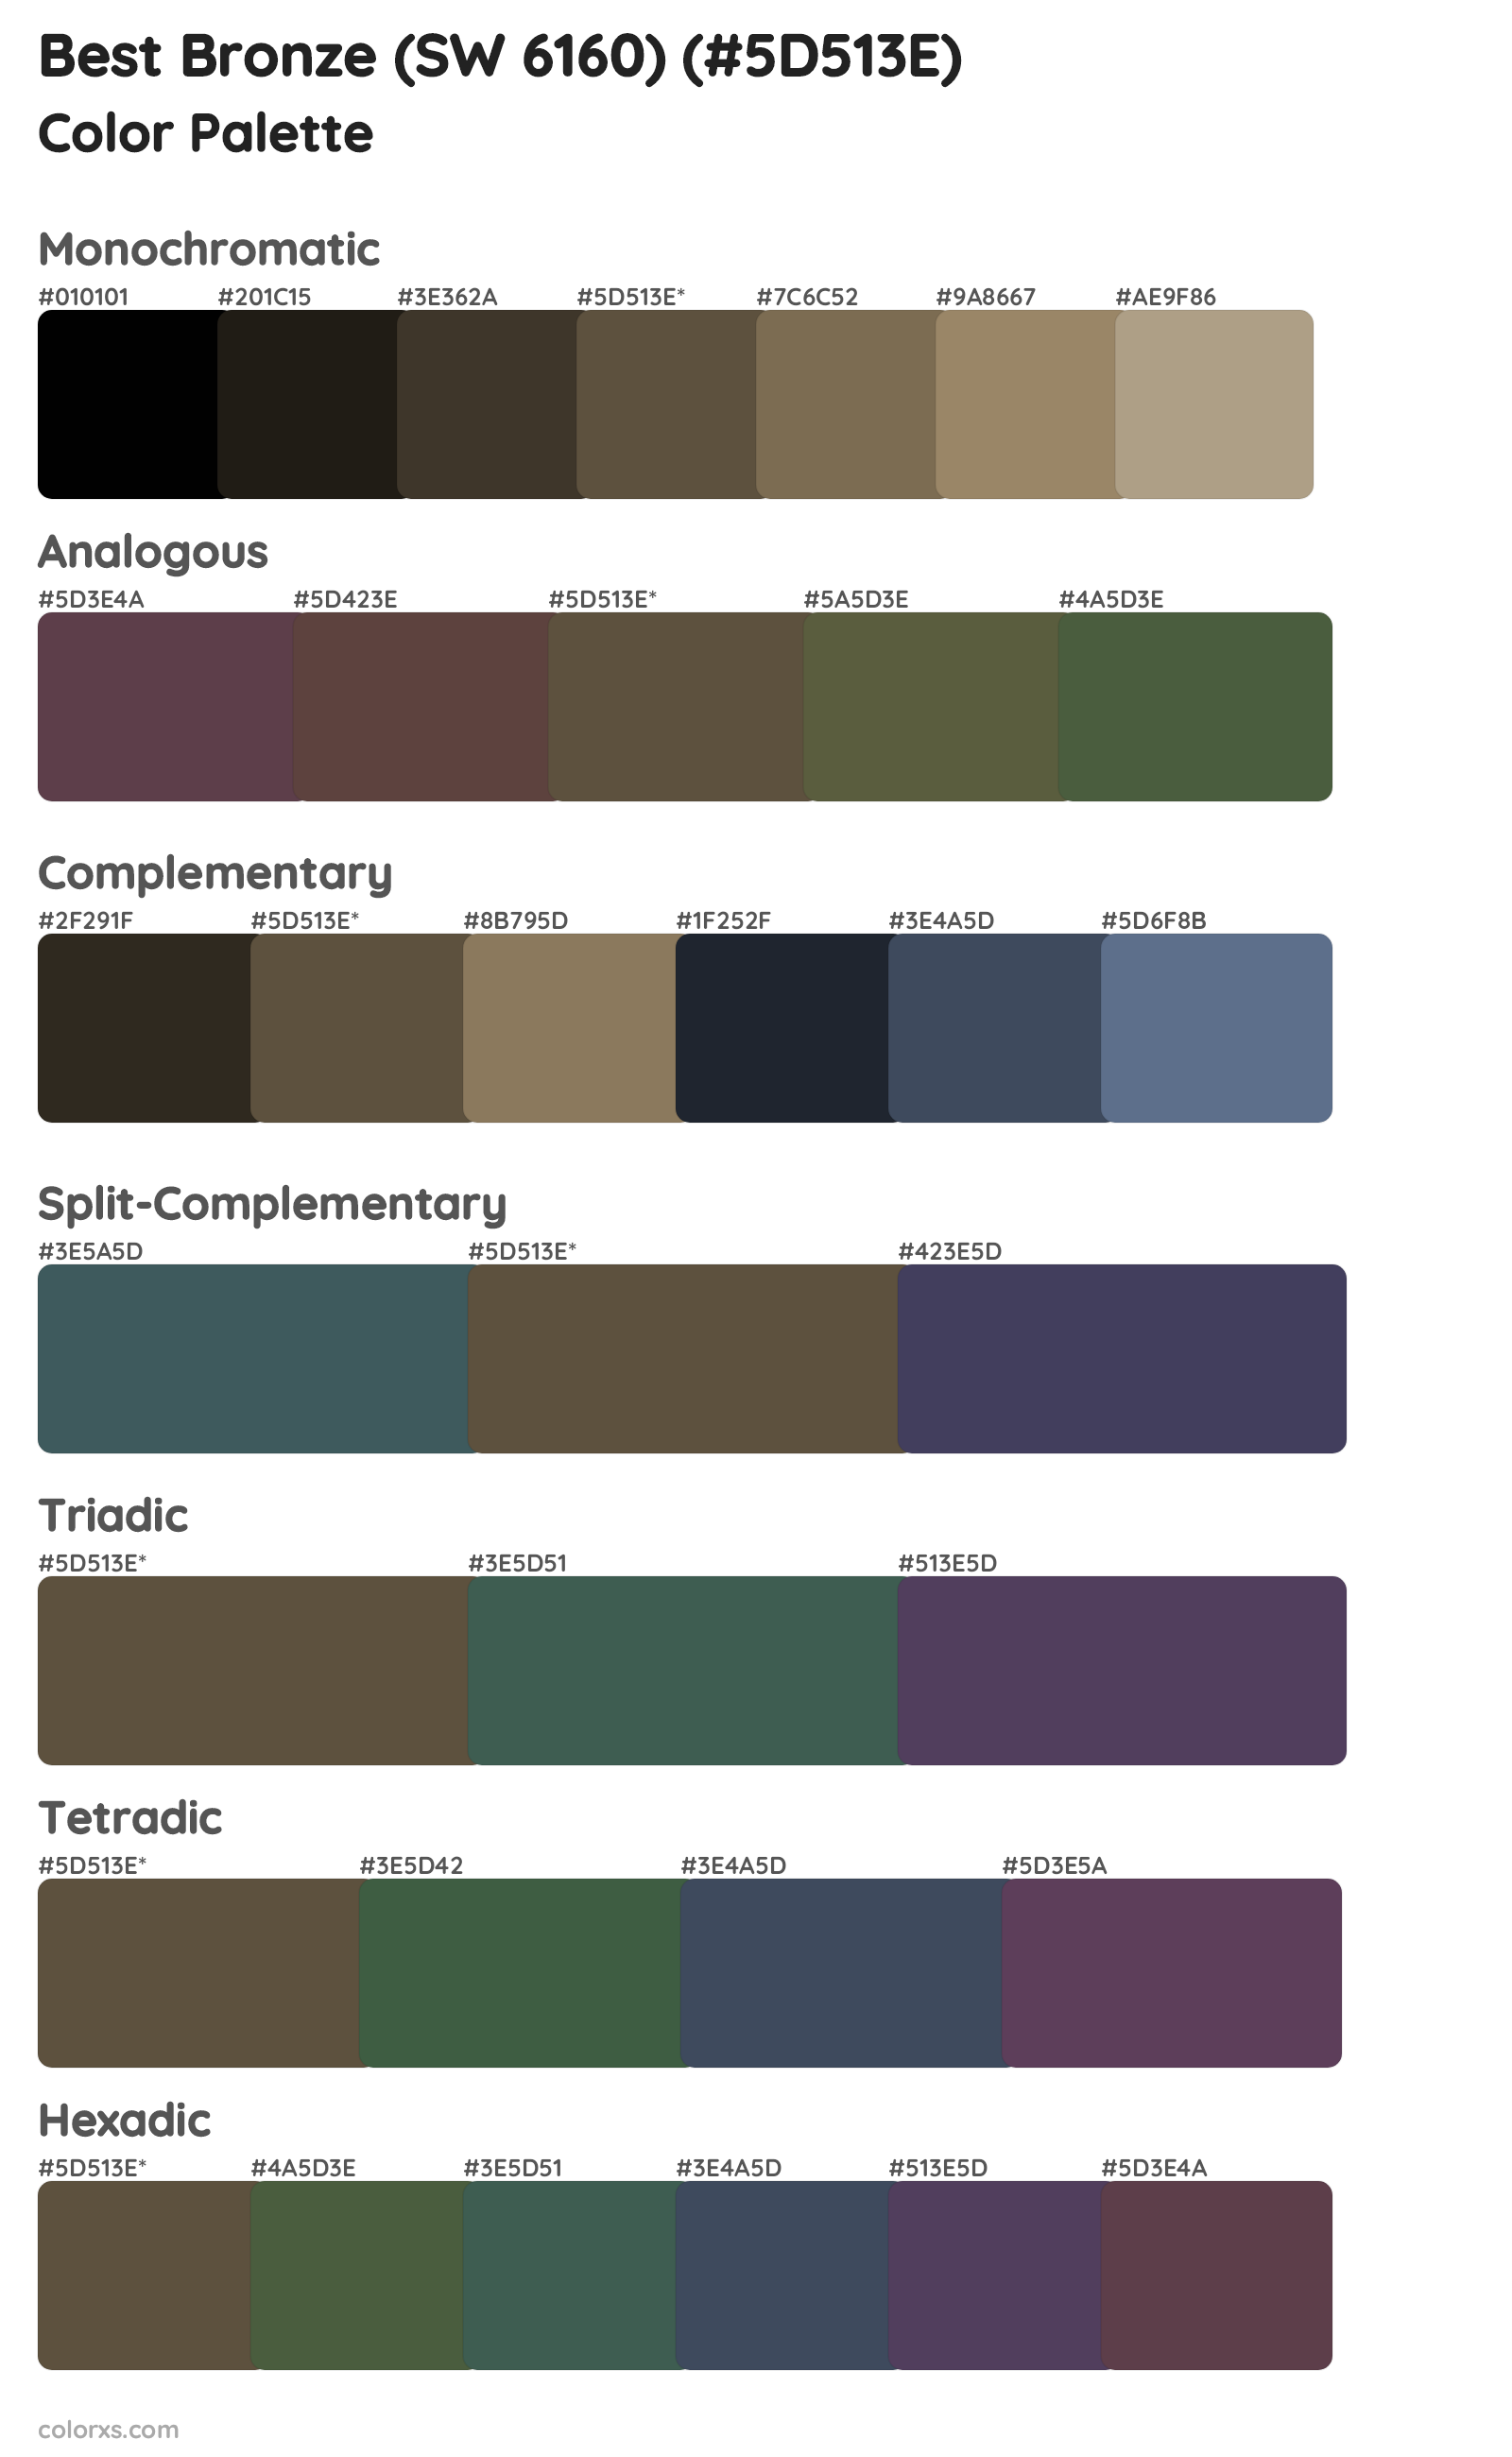 Best Bronze (SW 6160) Color Scheme Palettes